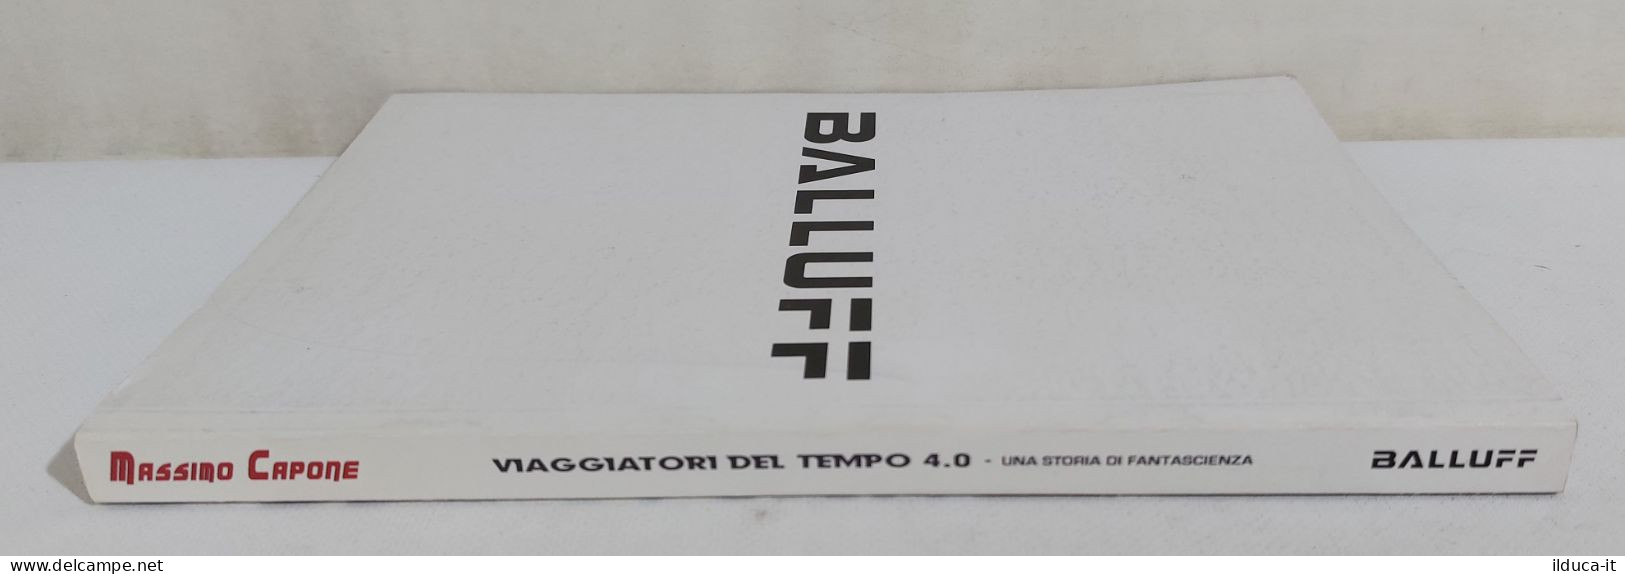 I111603 Massimo Capone - Viaggiatori Del Tempo 4.0 - Balluff 2016 - Primeras Ediciones